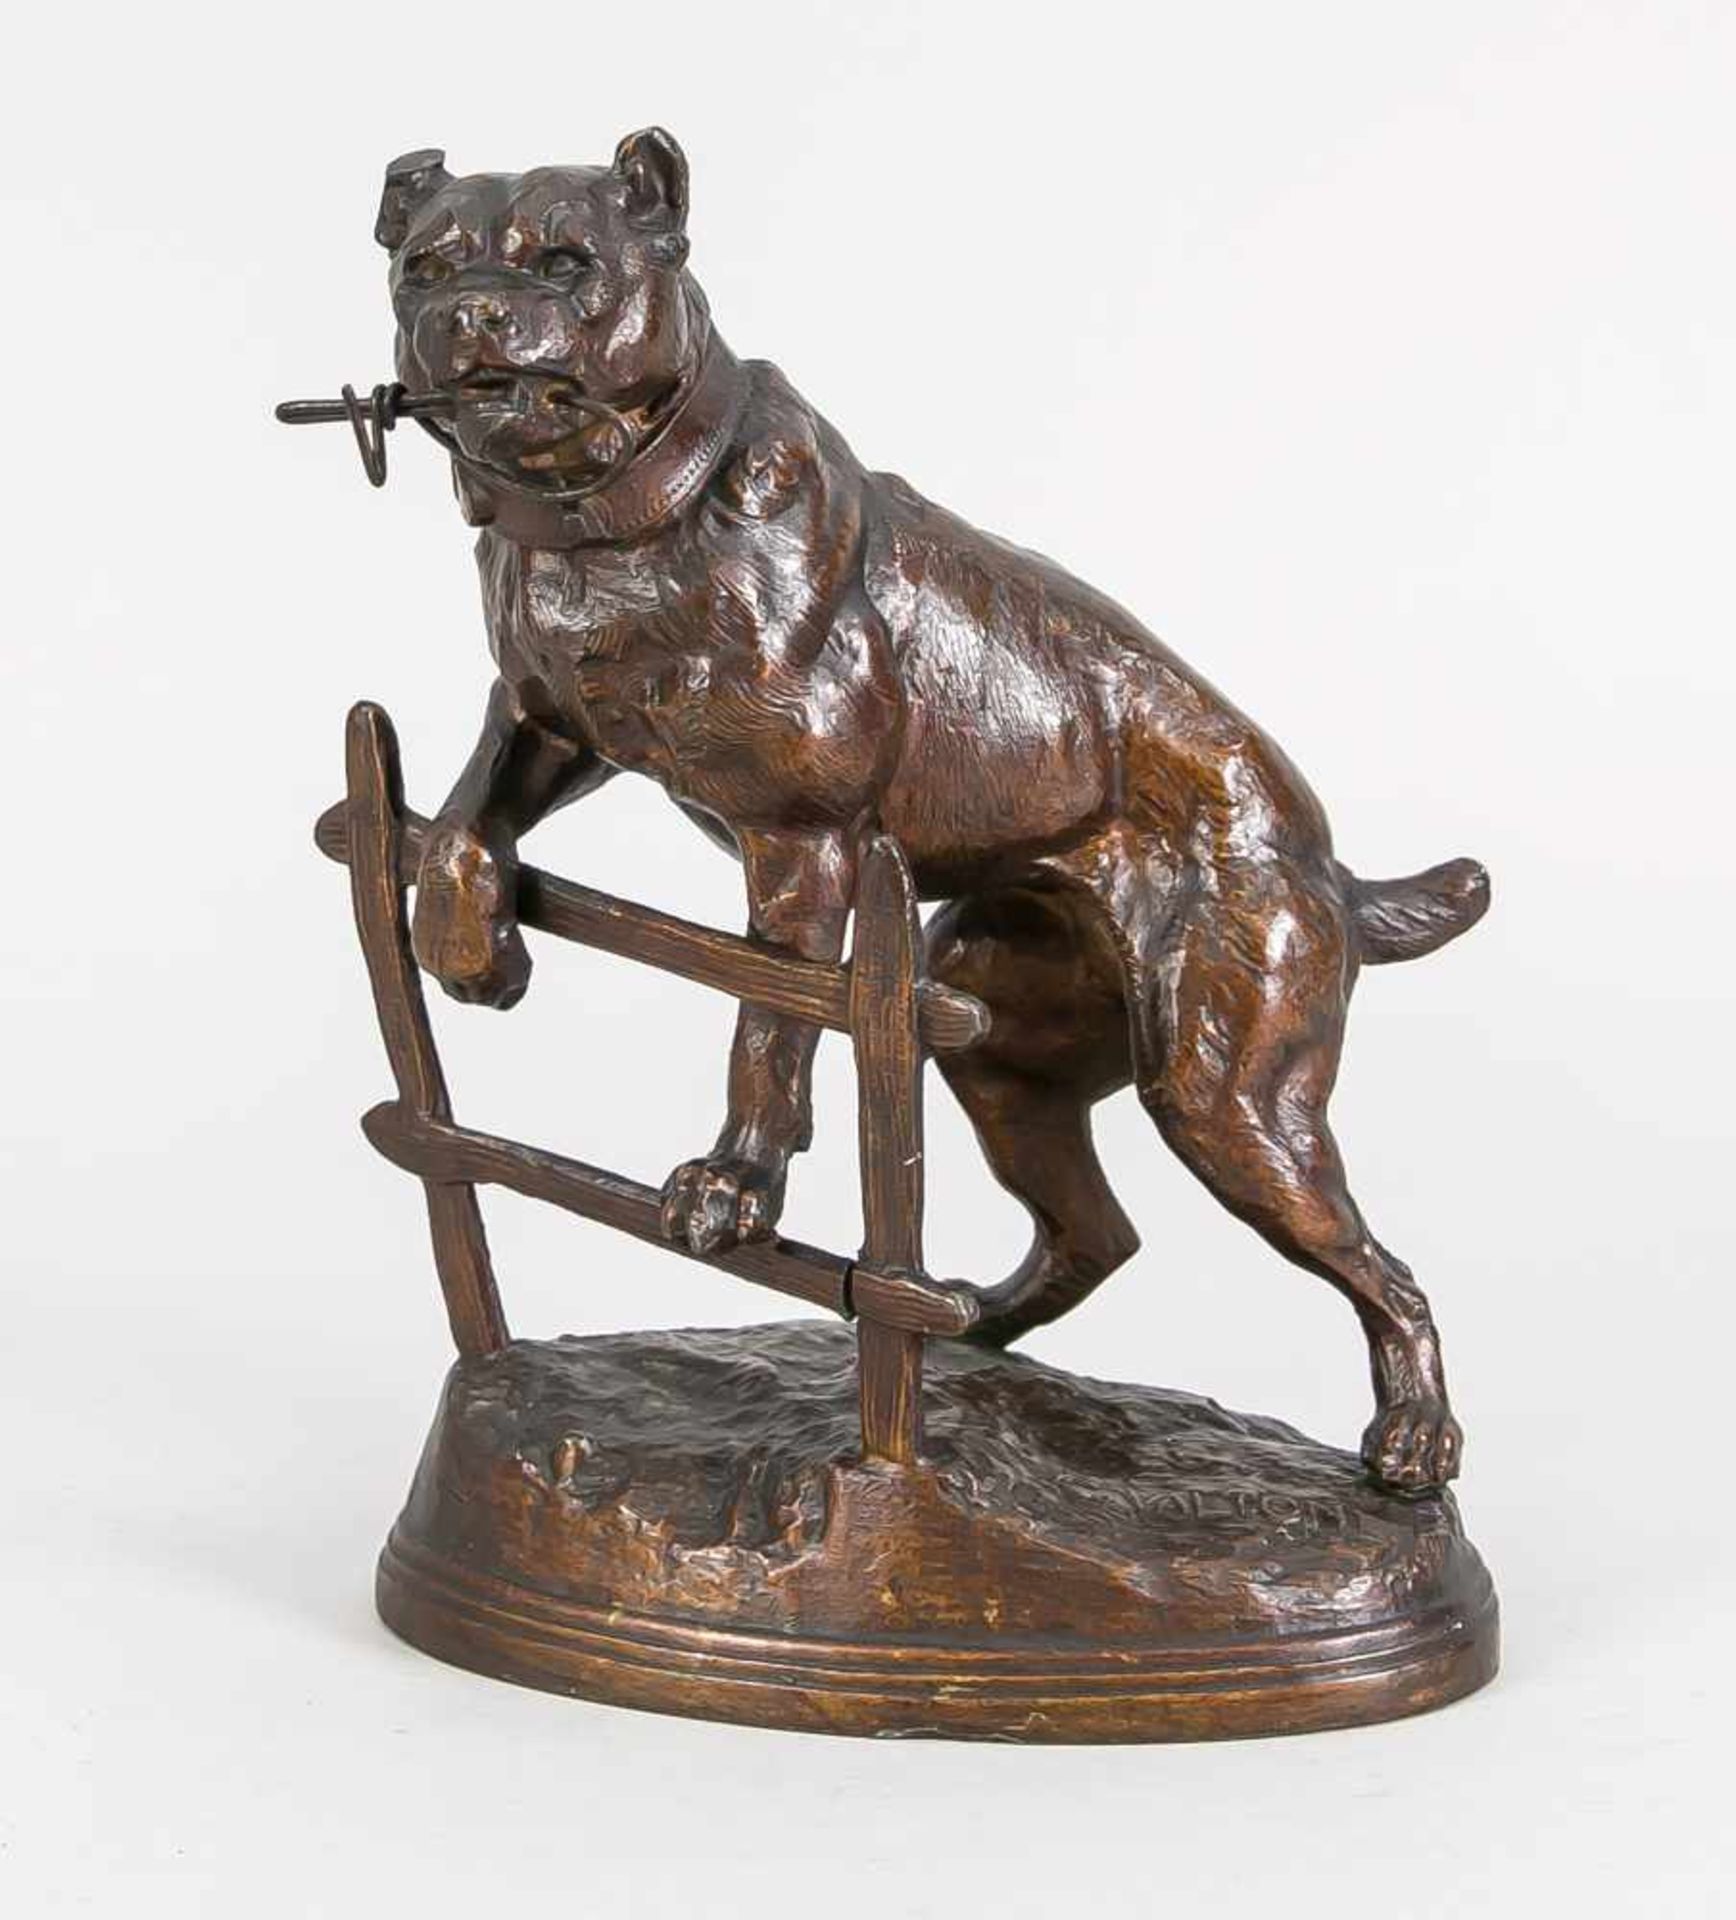 Taschenuhrenständer in Gestalt eines Wachhundes, um 1900, Zinn, bronzefarben patiniert, im